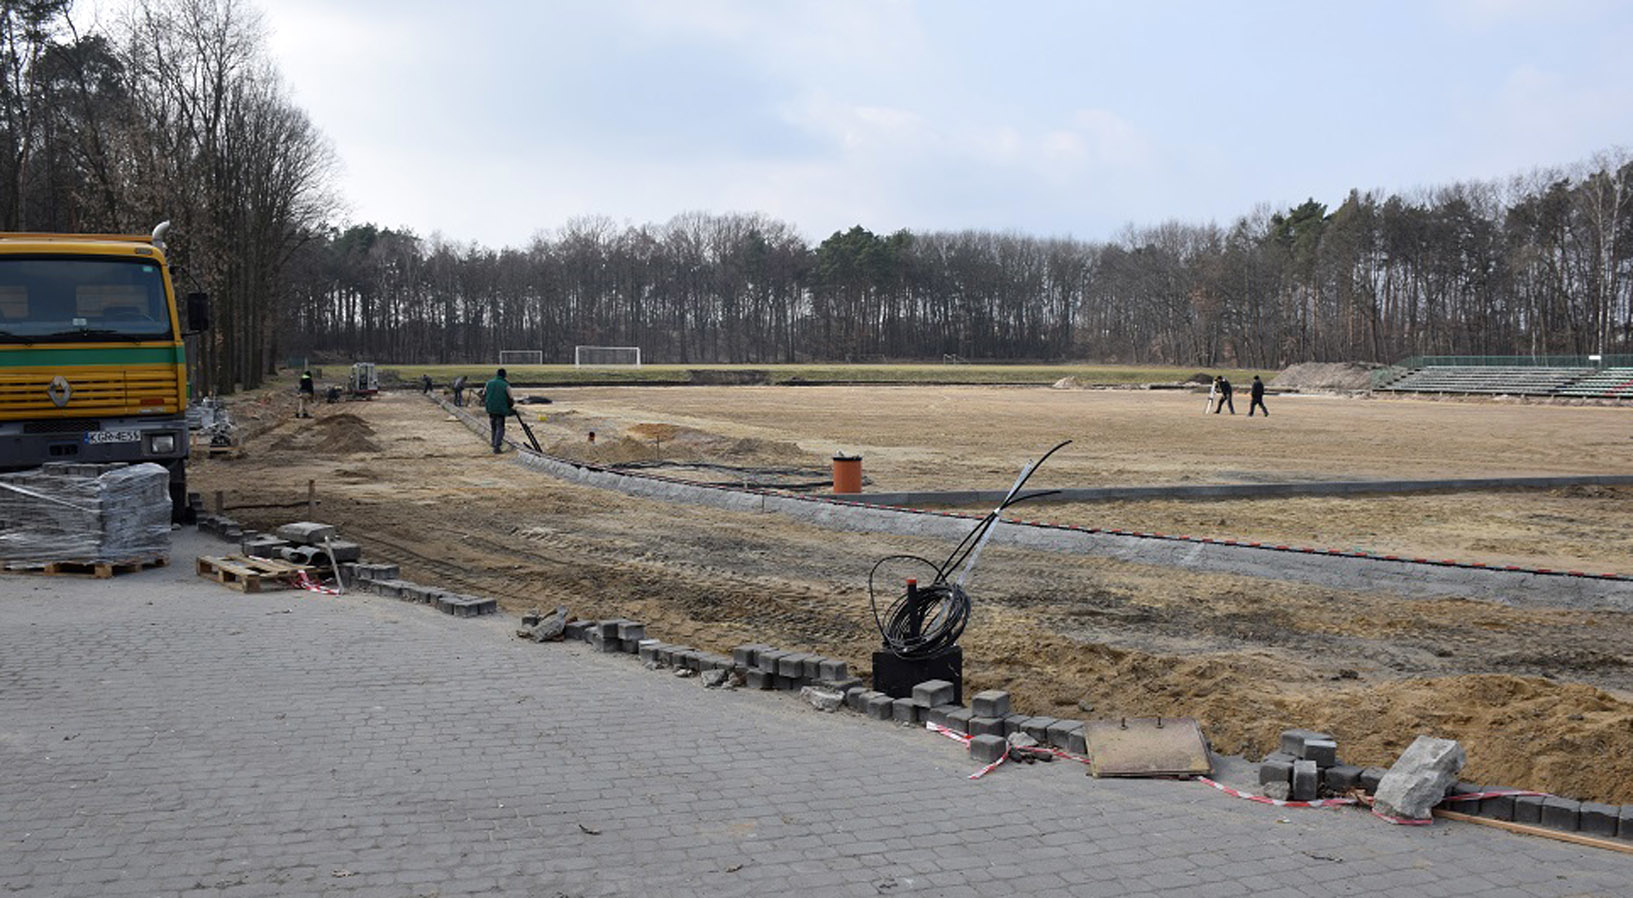 Po zimie wznowiono prace przy przebudowie stadionu w Kolbuszowej |ZDJĘCIA| - Zdjęcie główne